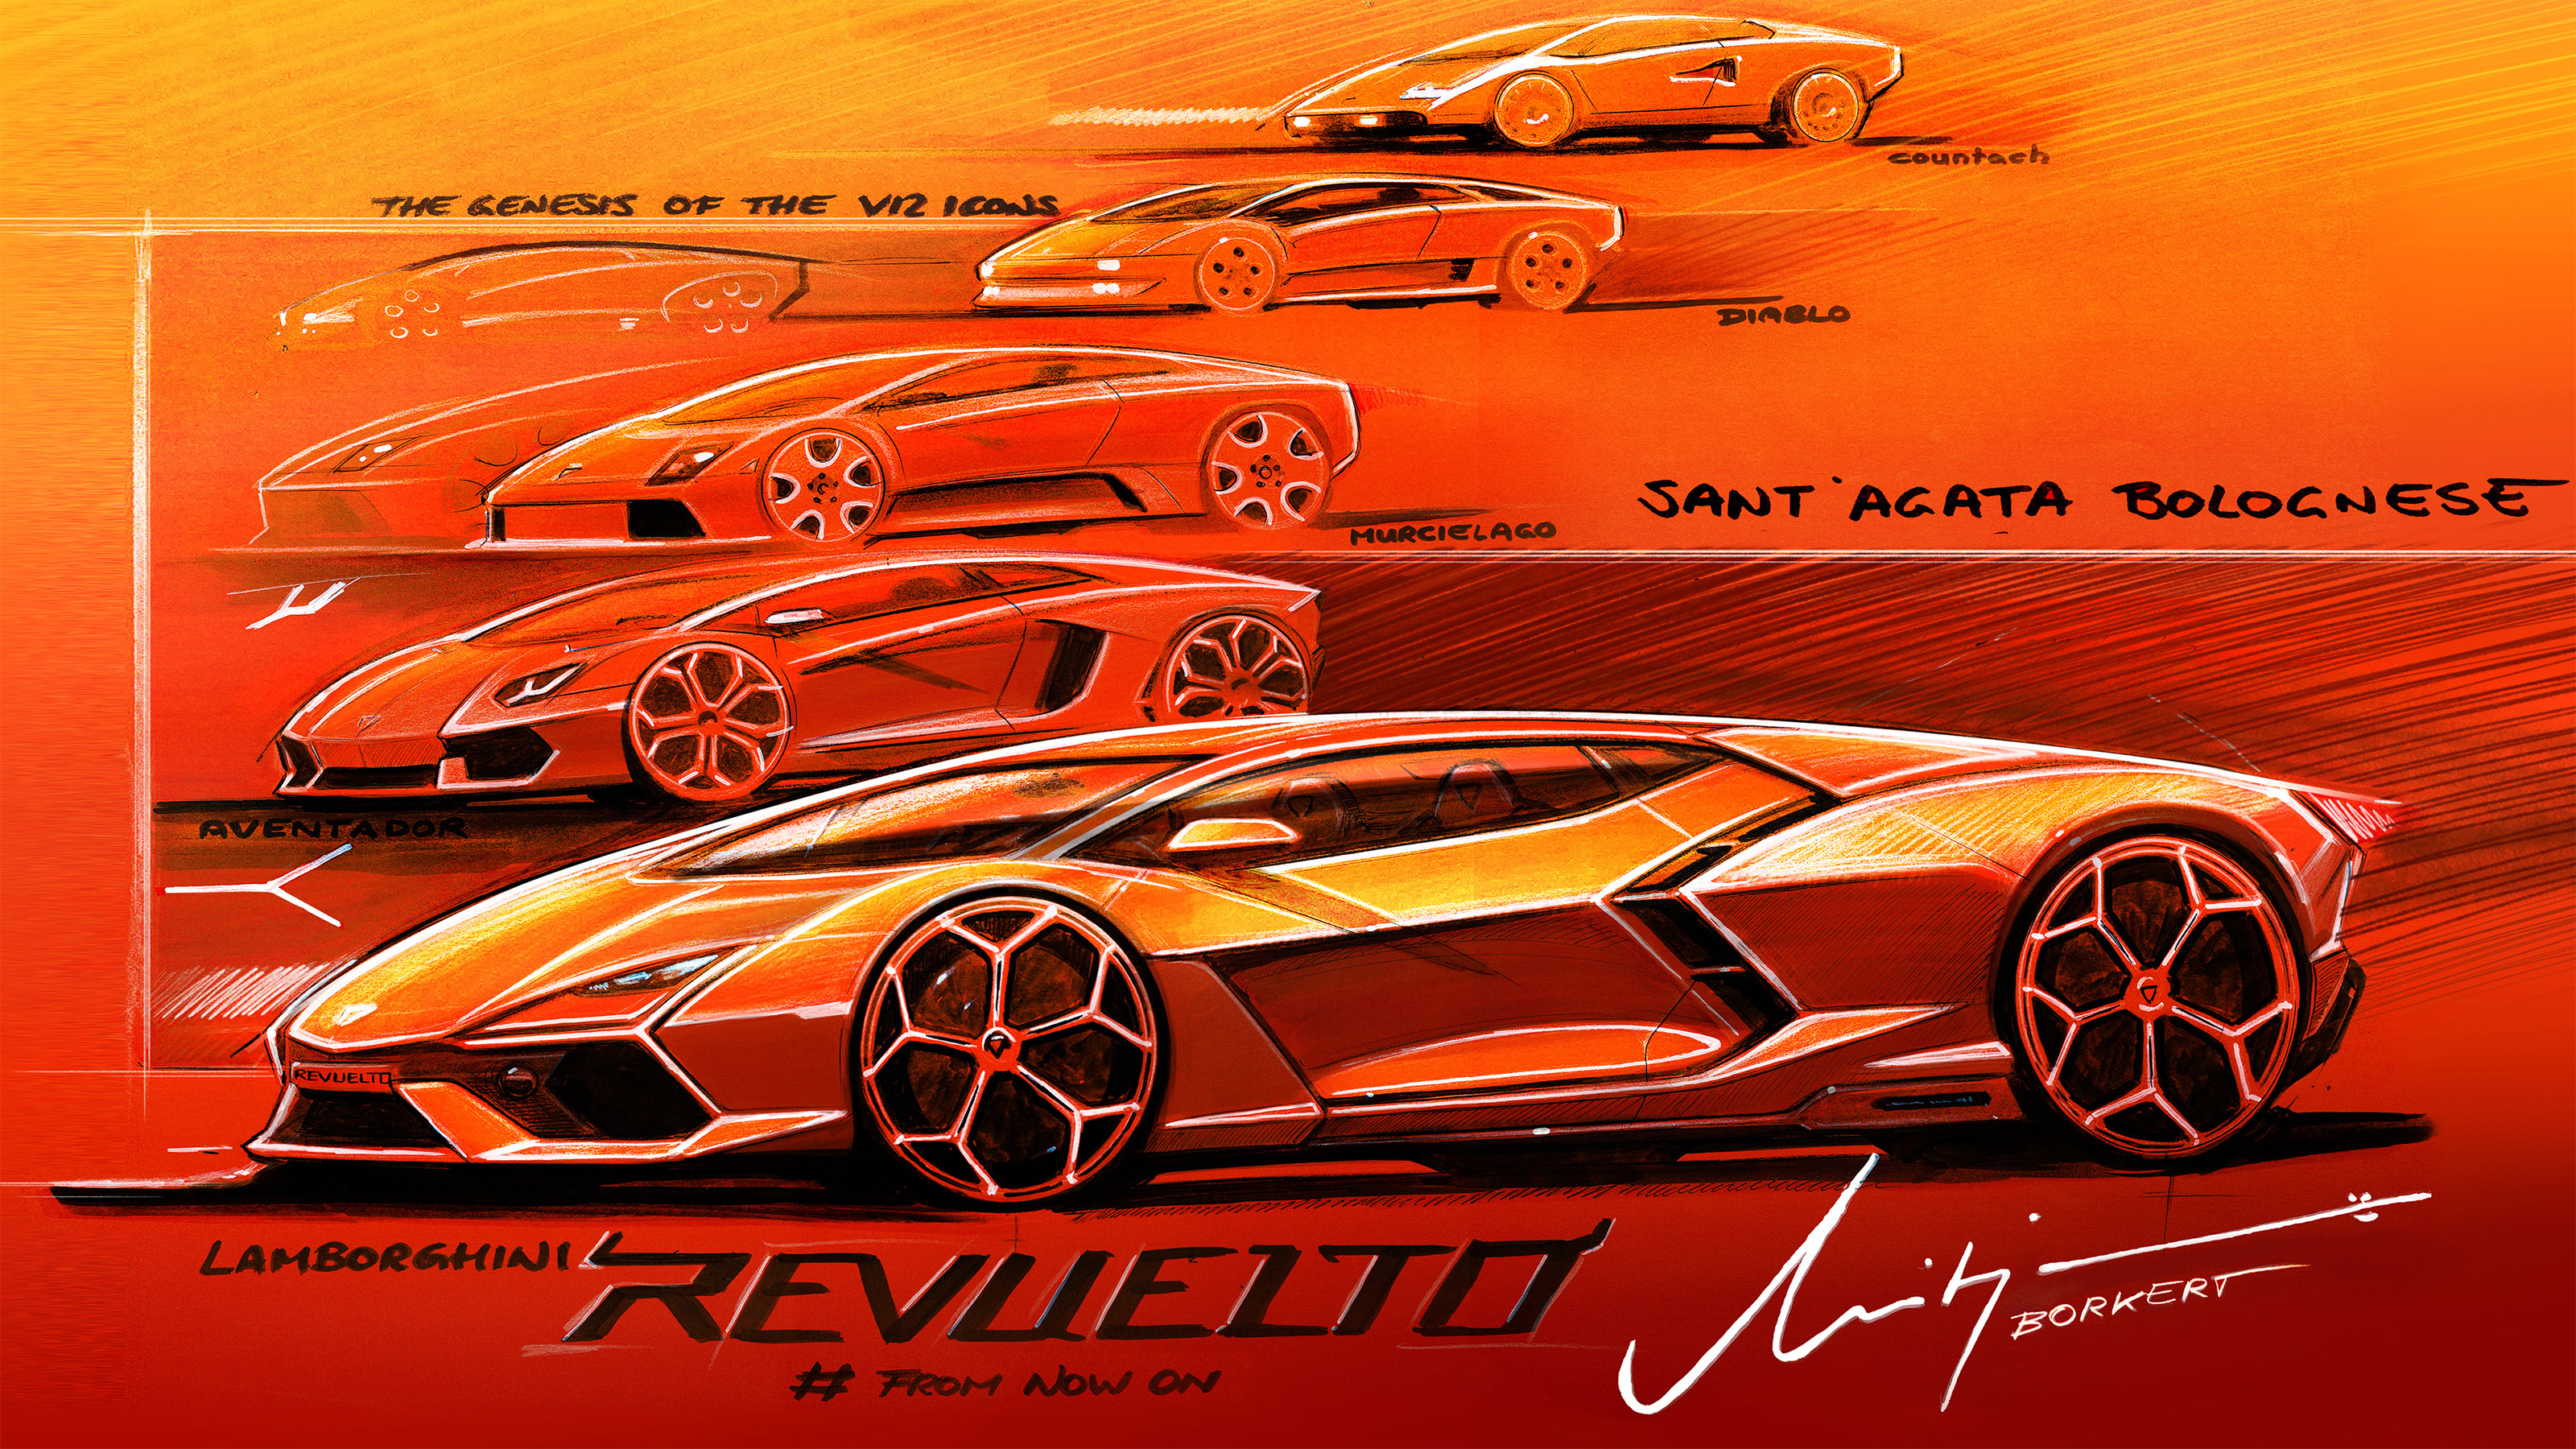 All-new Lamborghini Revuelto revealed - carsales.com.au